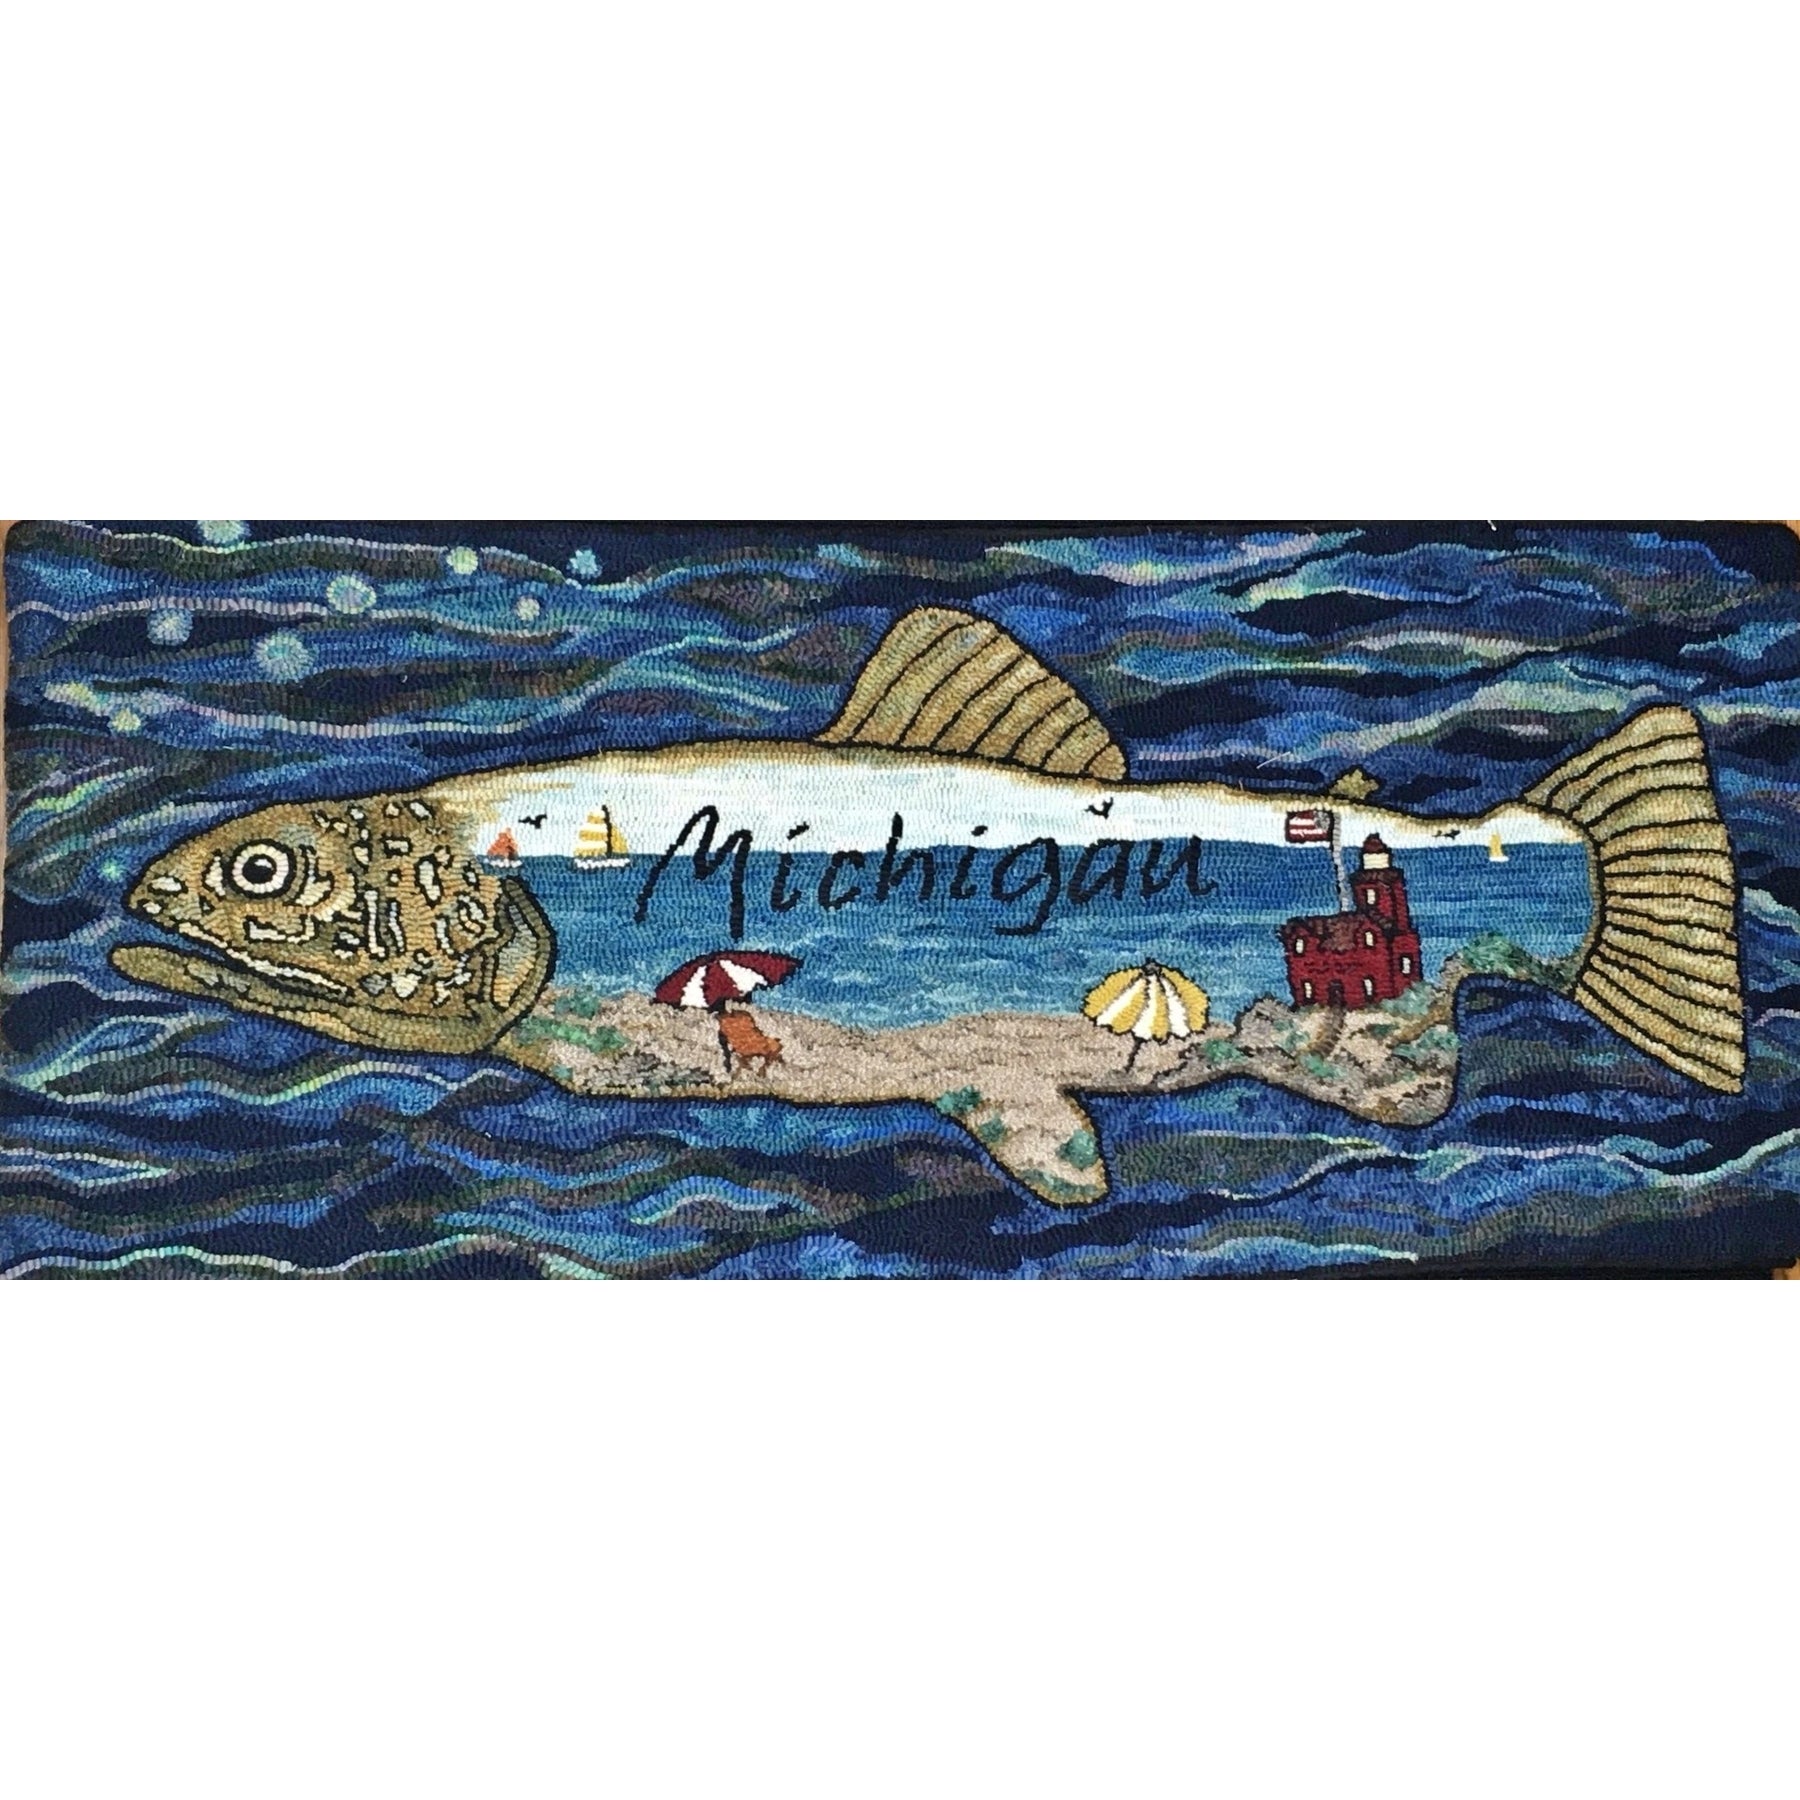 Michigan's Fish, rug hooking pattern